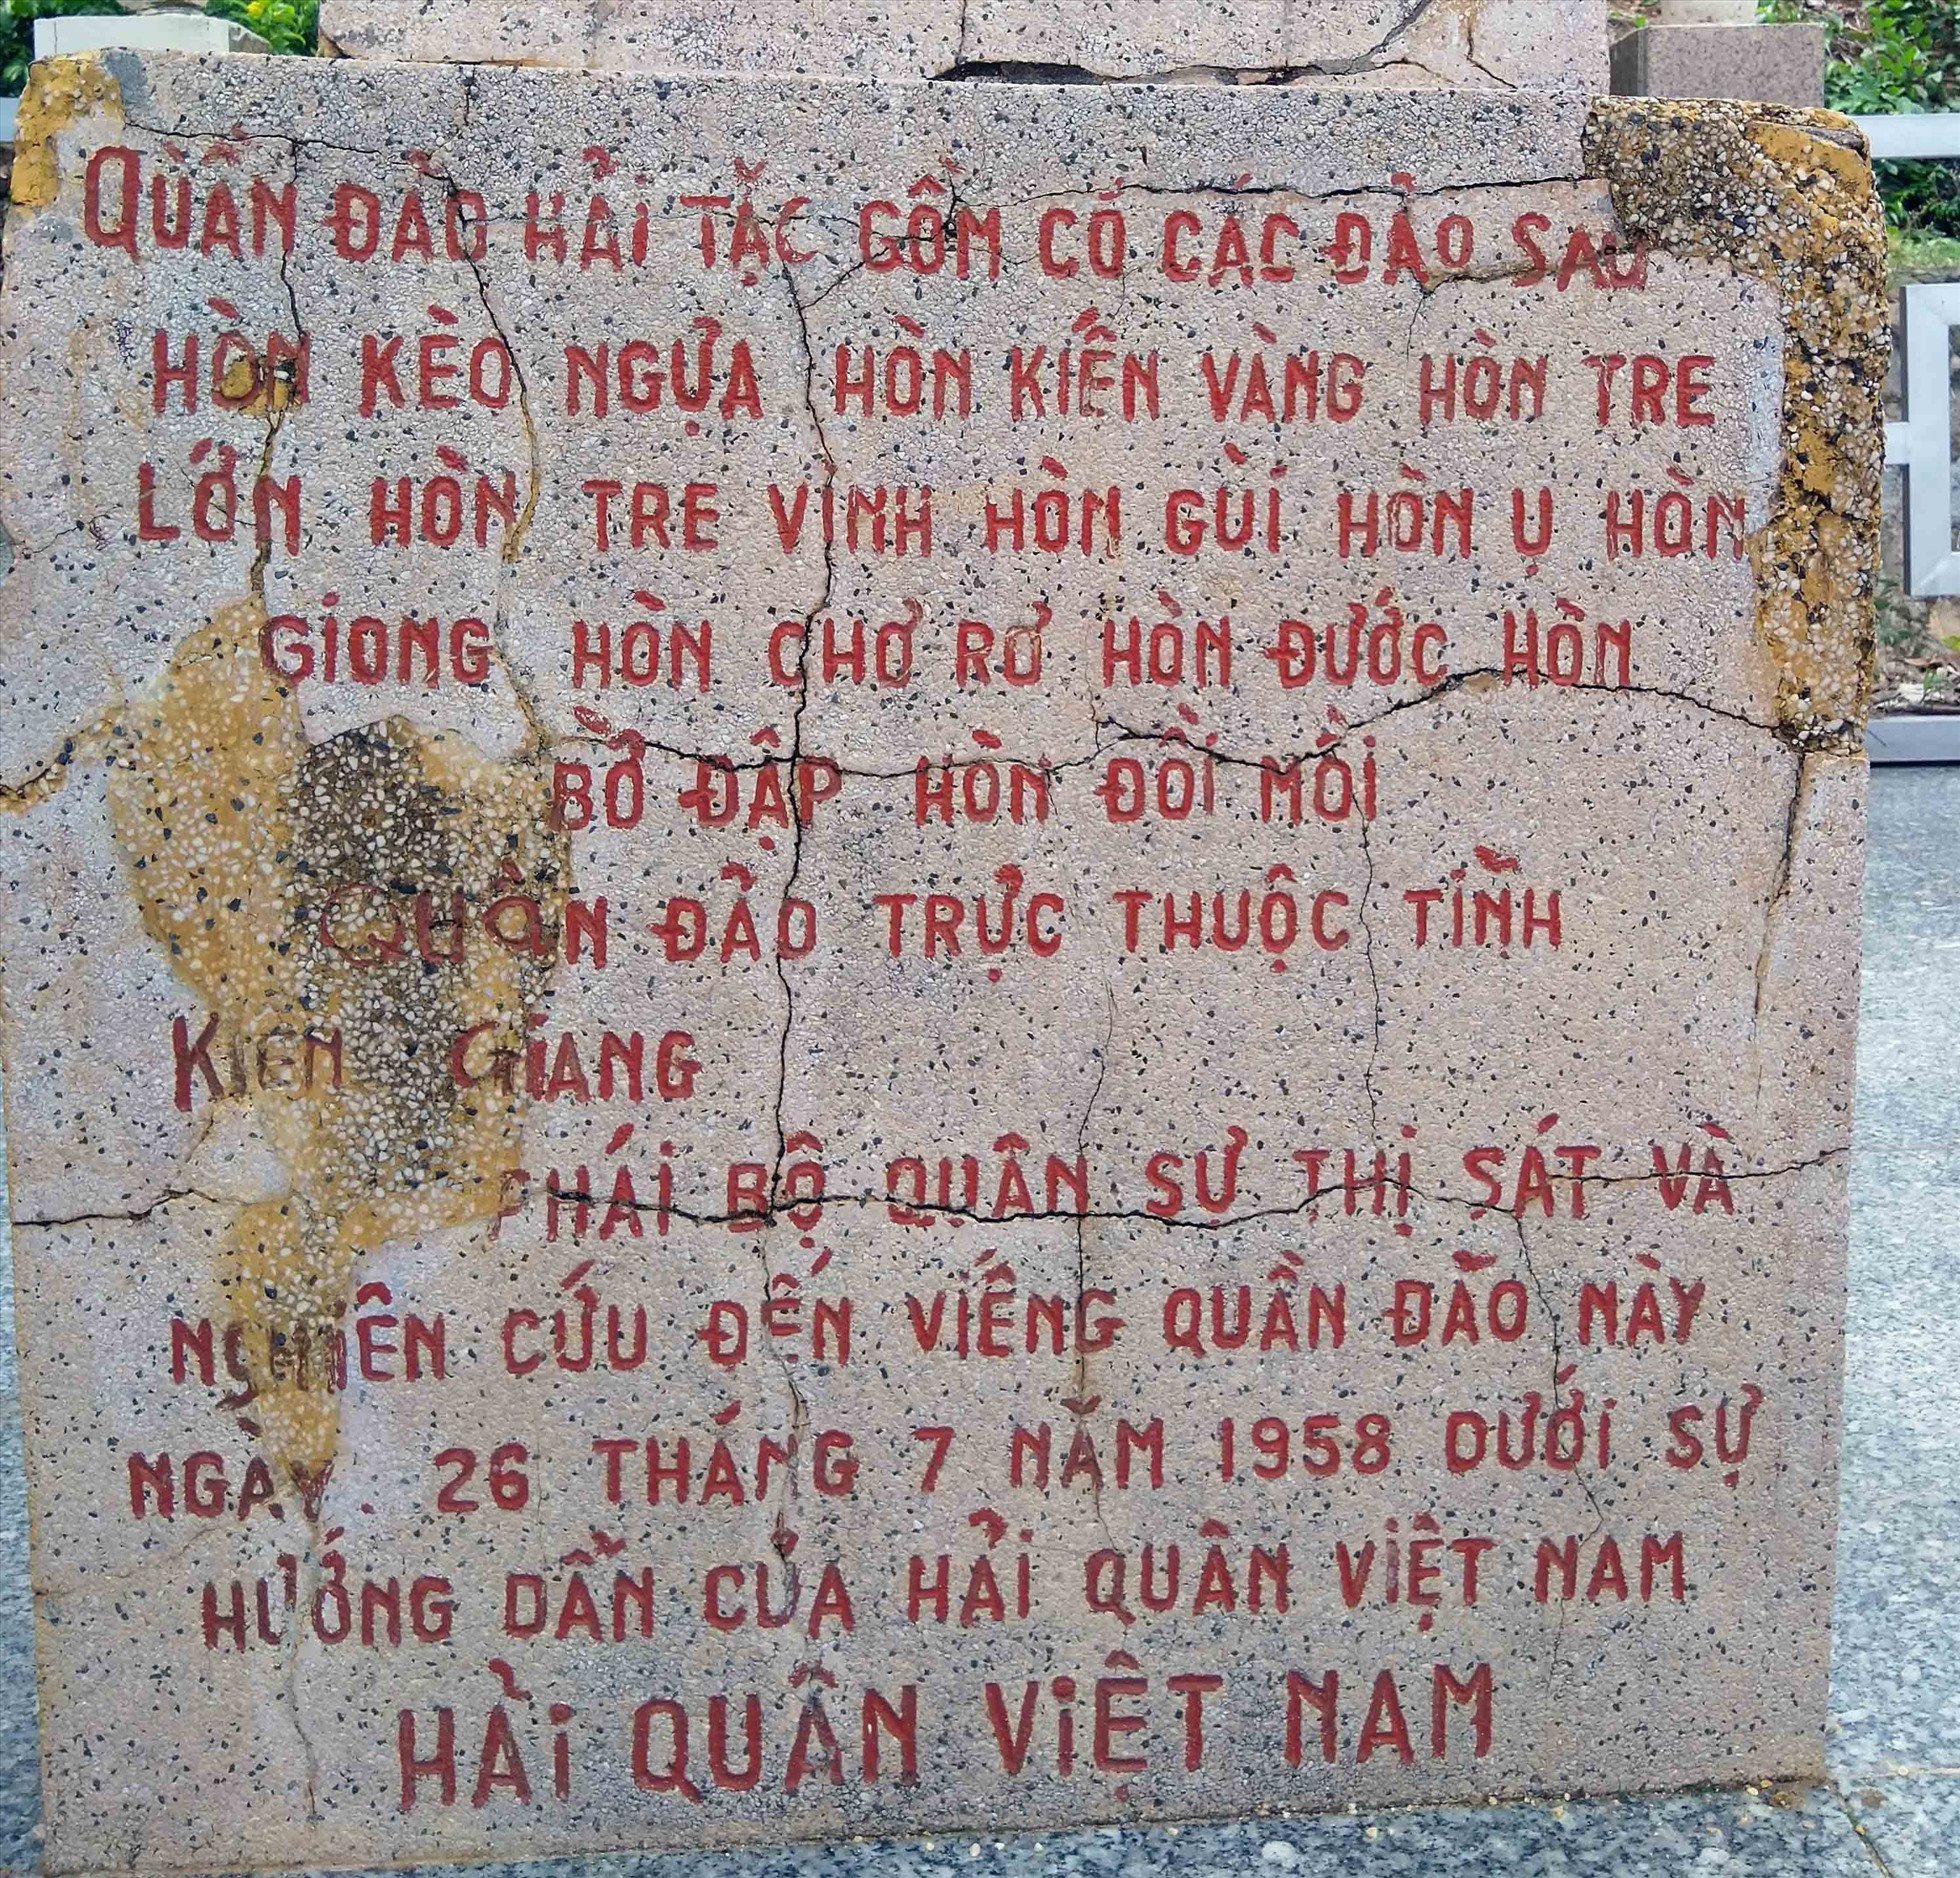 Quần đảo nổi tiếng Kiên Giang, xưa là sào huyệt của cướp biển, nay cảnh đầu tiên thấy là một bãi biển đẹp- Ảnh 3.